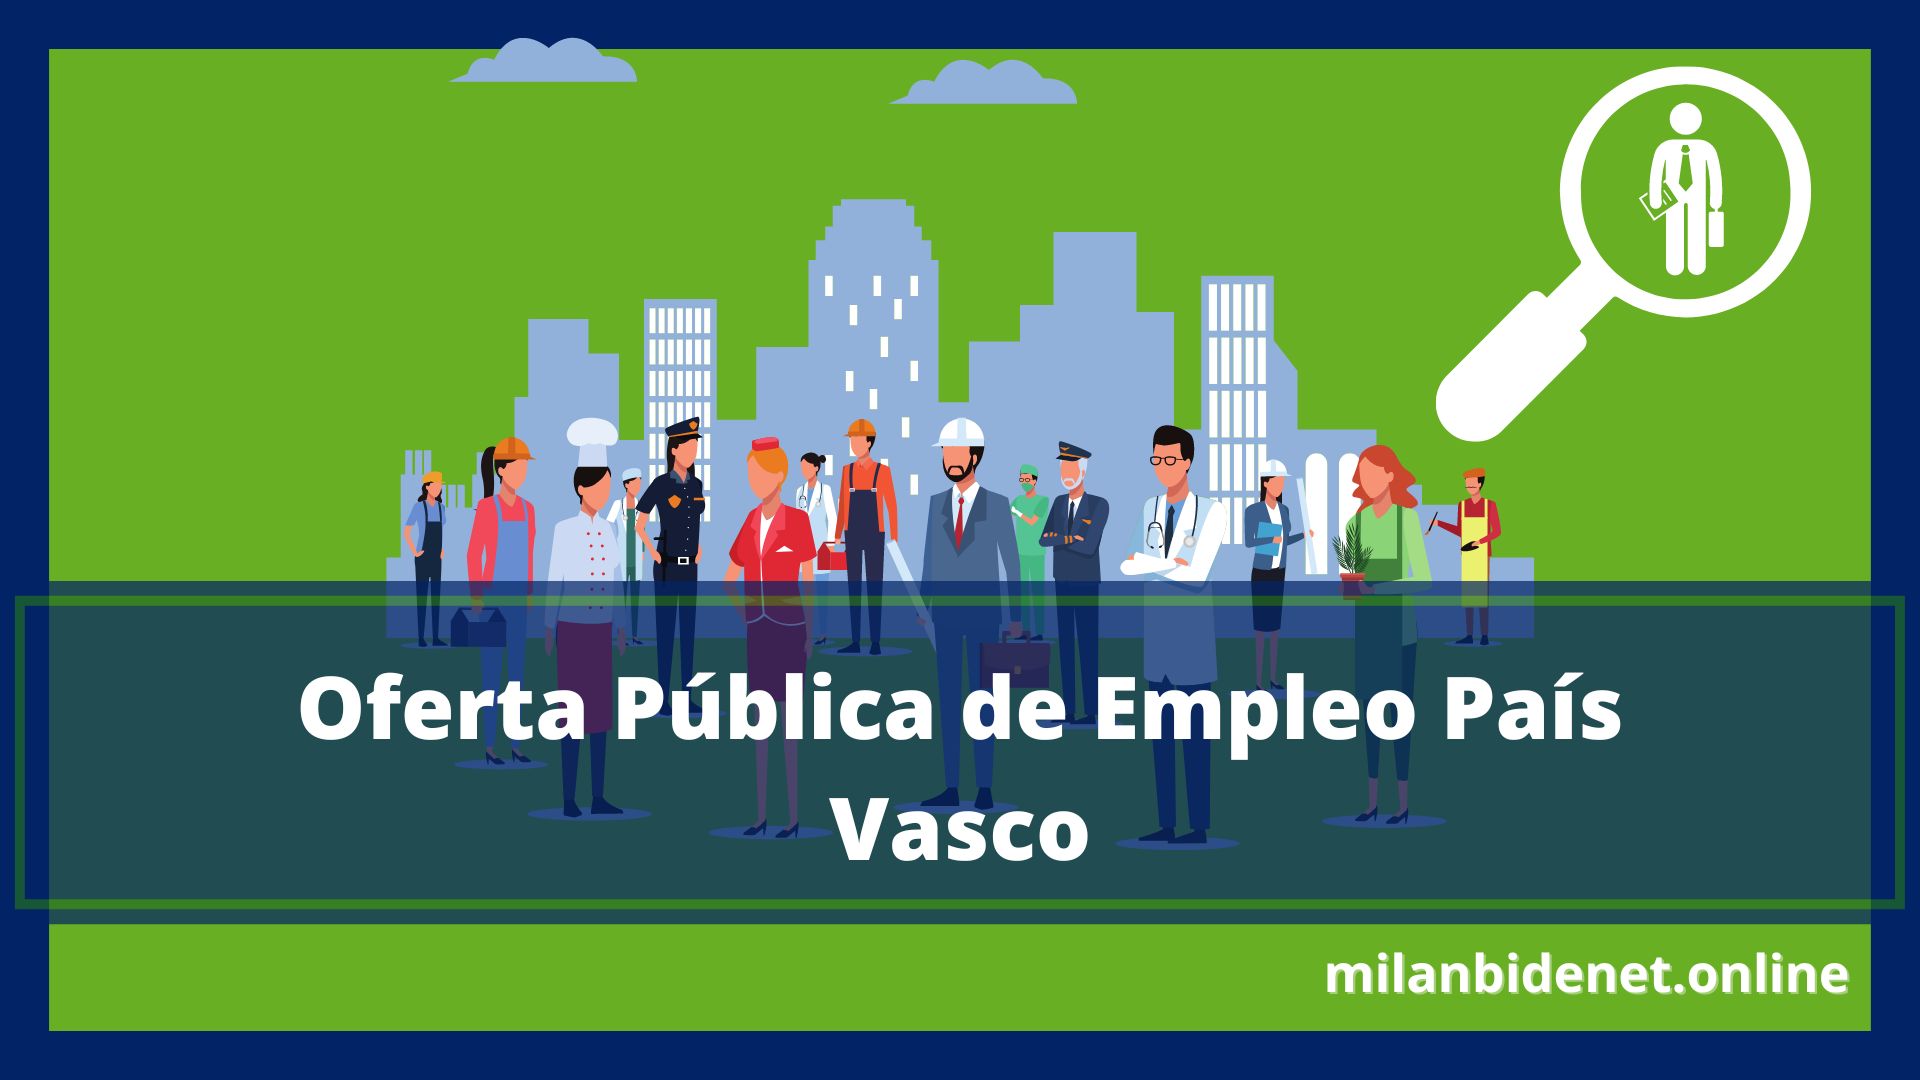 Oferta Pública de Empleo País Vasco